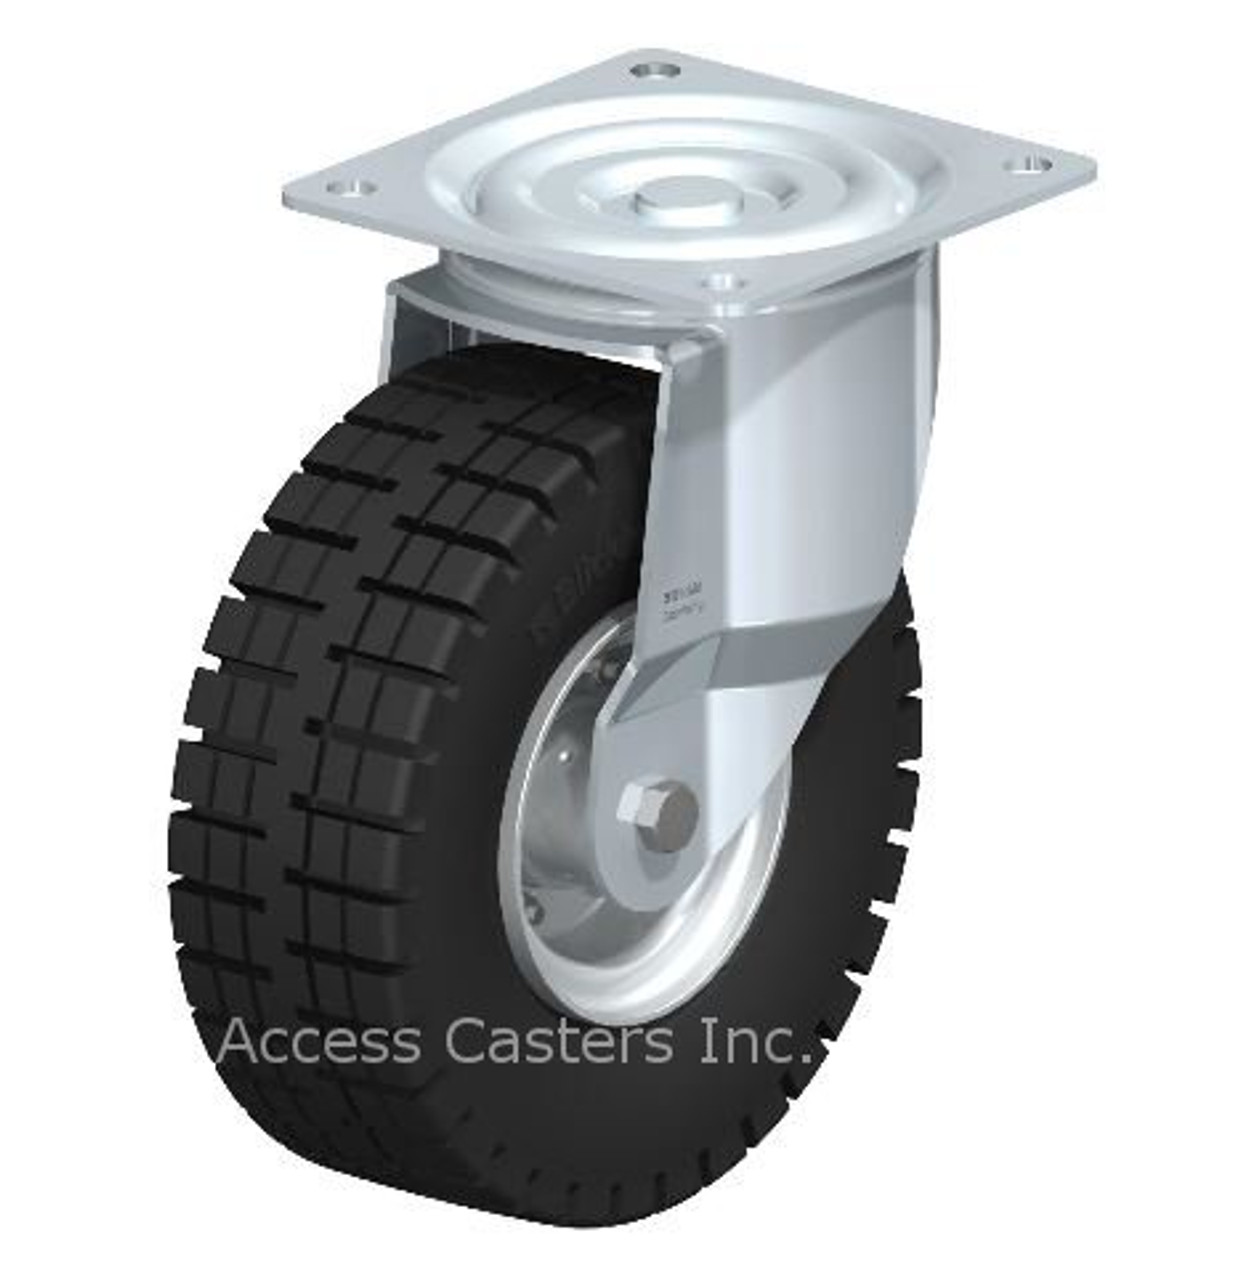 L-VLE 255K Blickle 10" Swivel Caster VLE Wheel Plate Ball Bearing